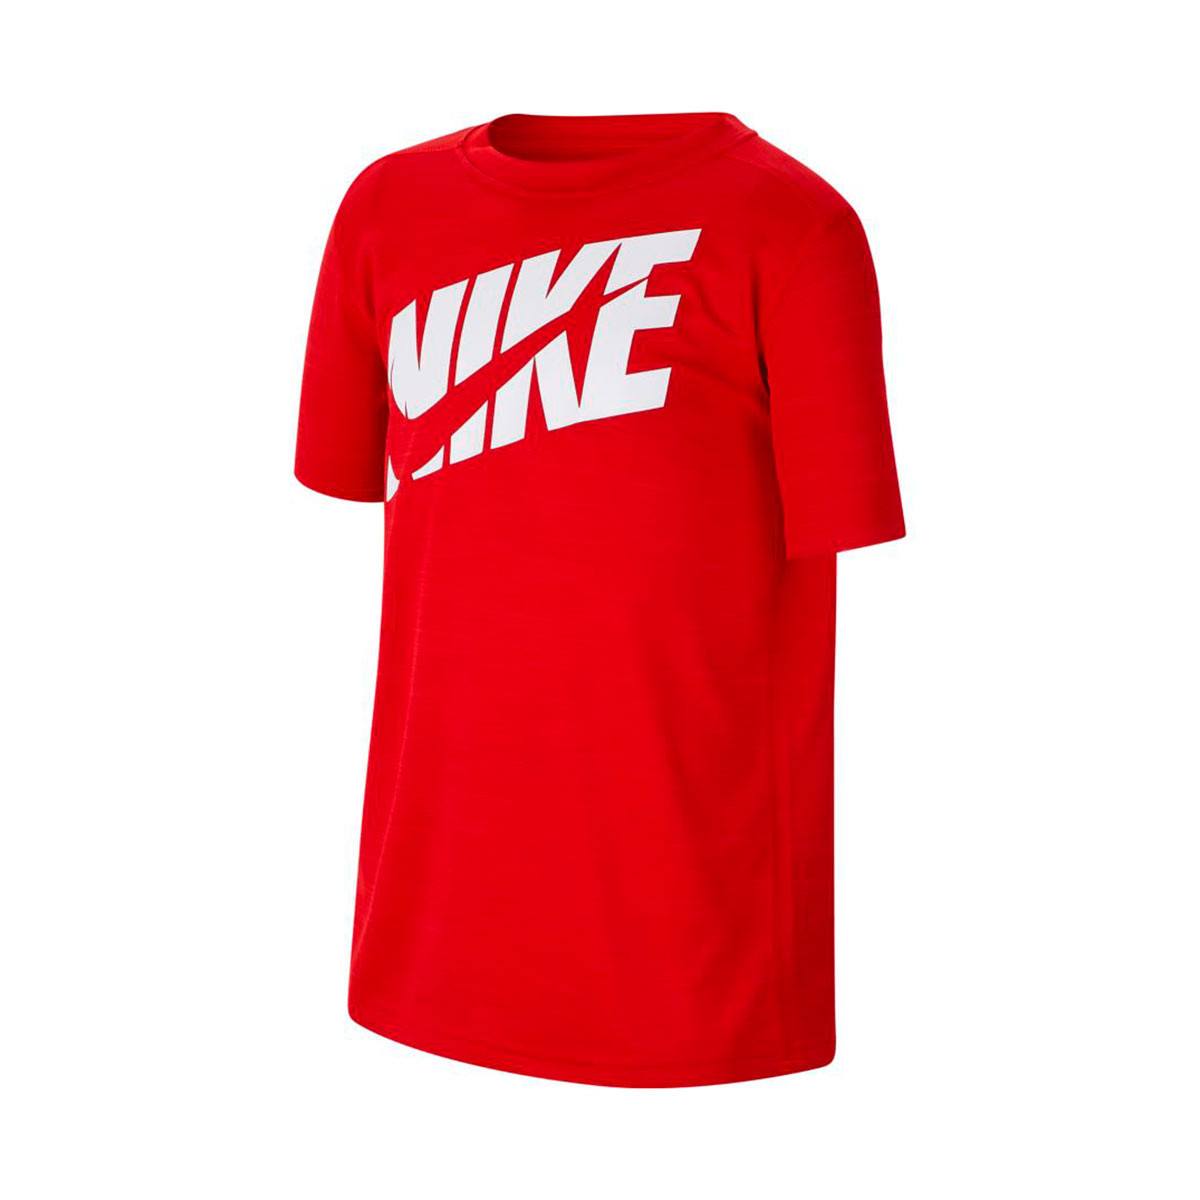 Camiseta Nike Performance Niño University red-White - Tienda de fútbol  Fútbol Emotion